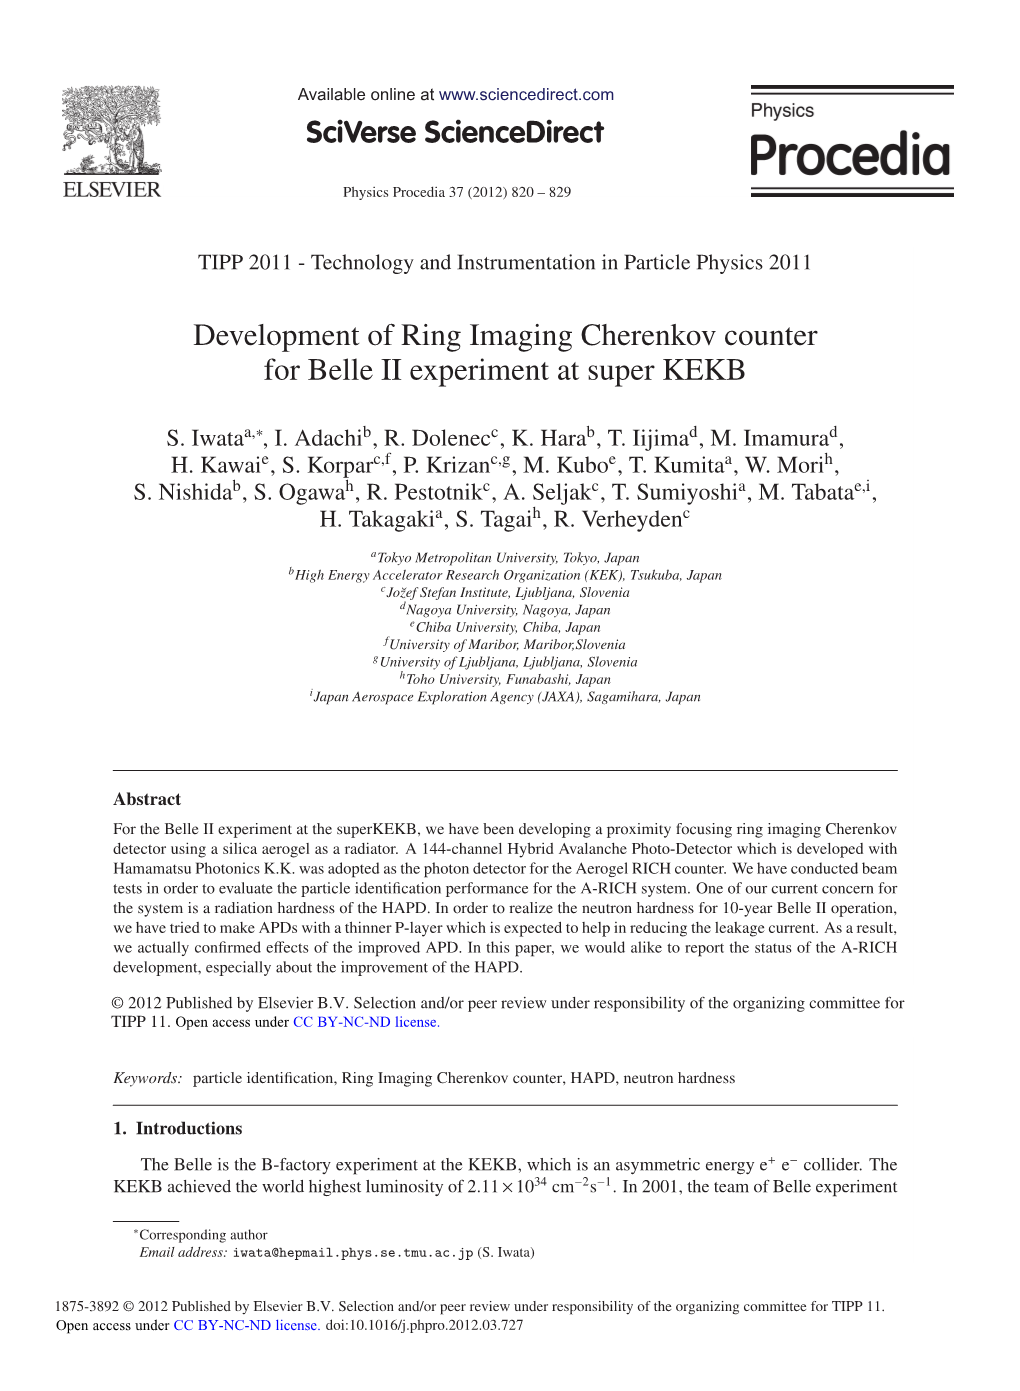 Development of Ring Imaging Cherenkov Counter for Belle II Experiment at Super KEKB